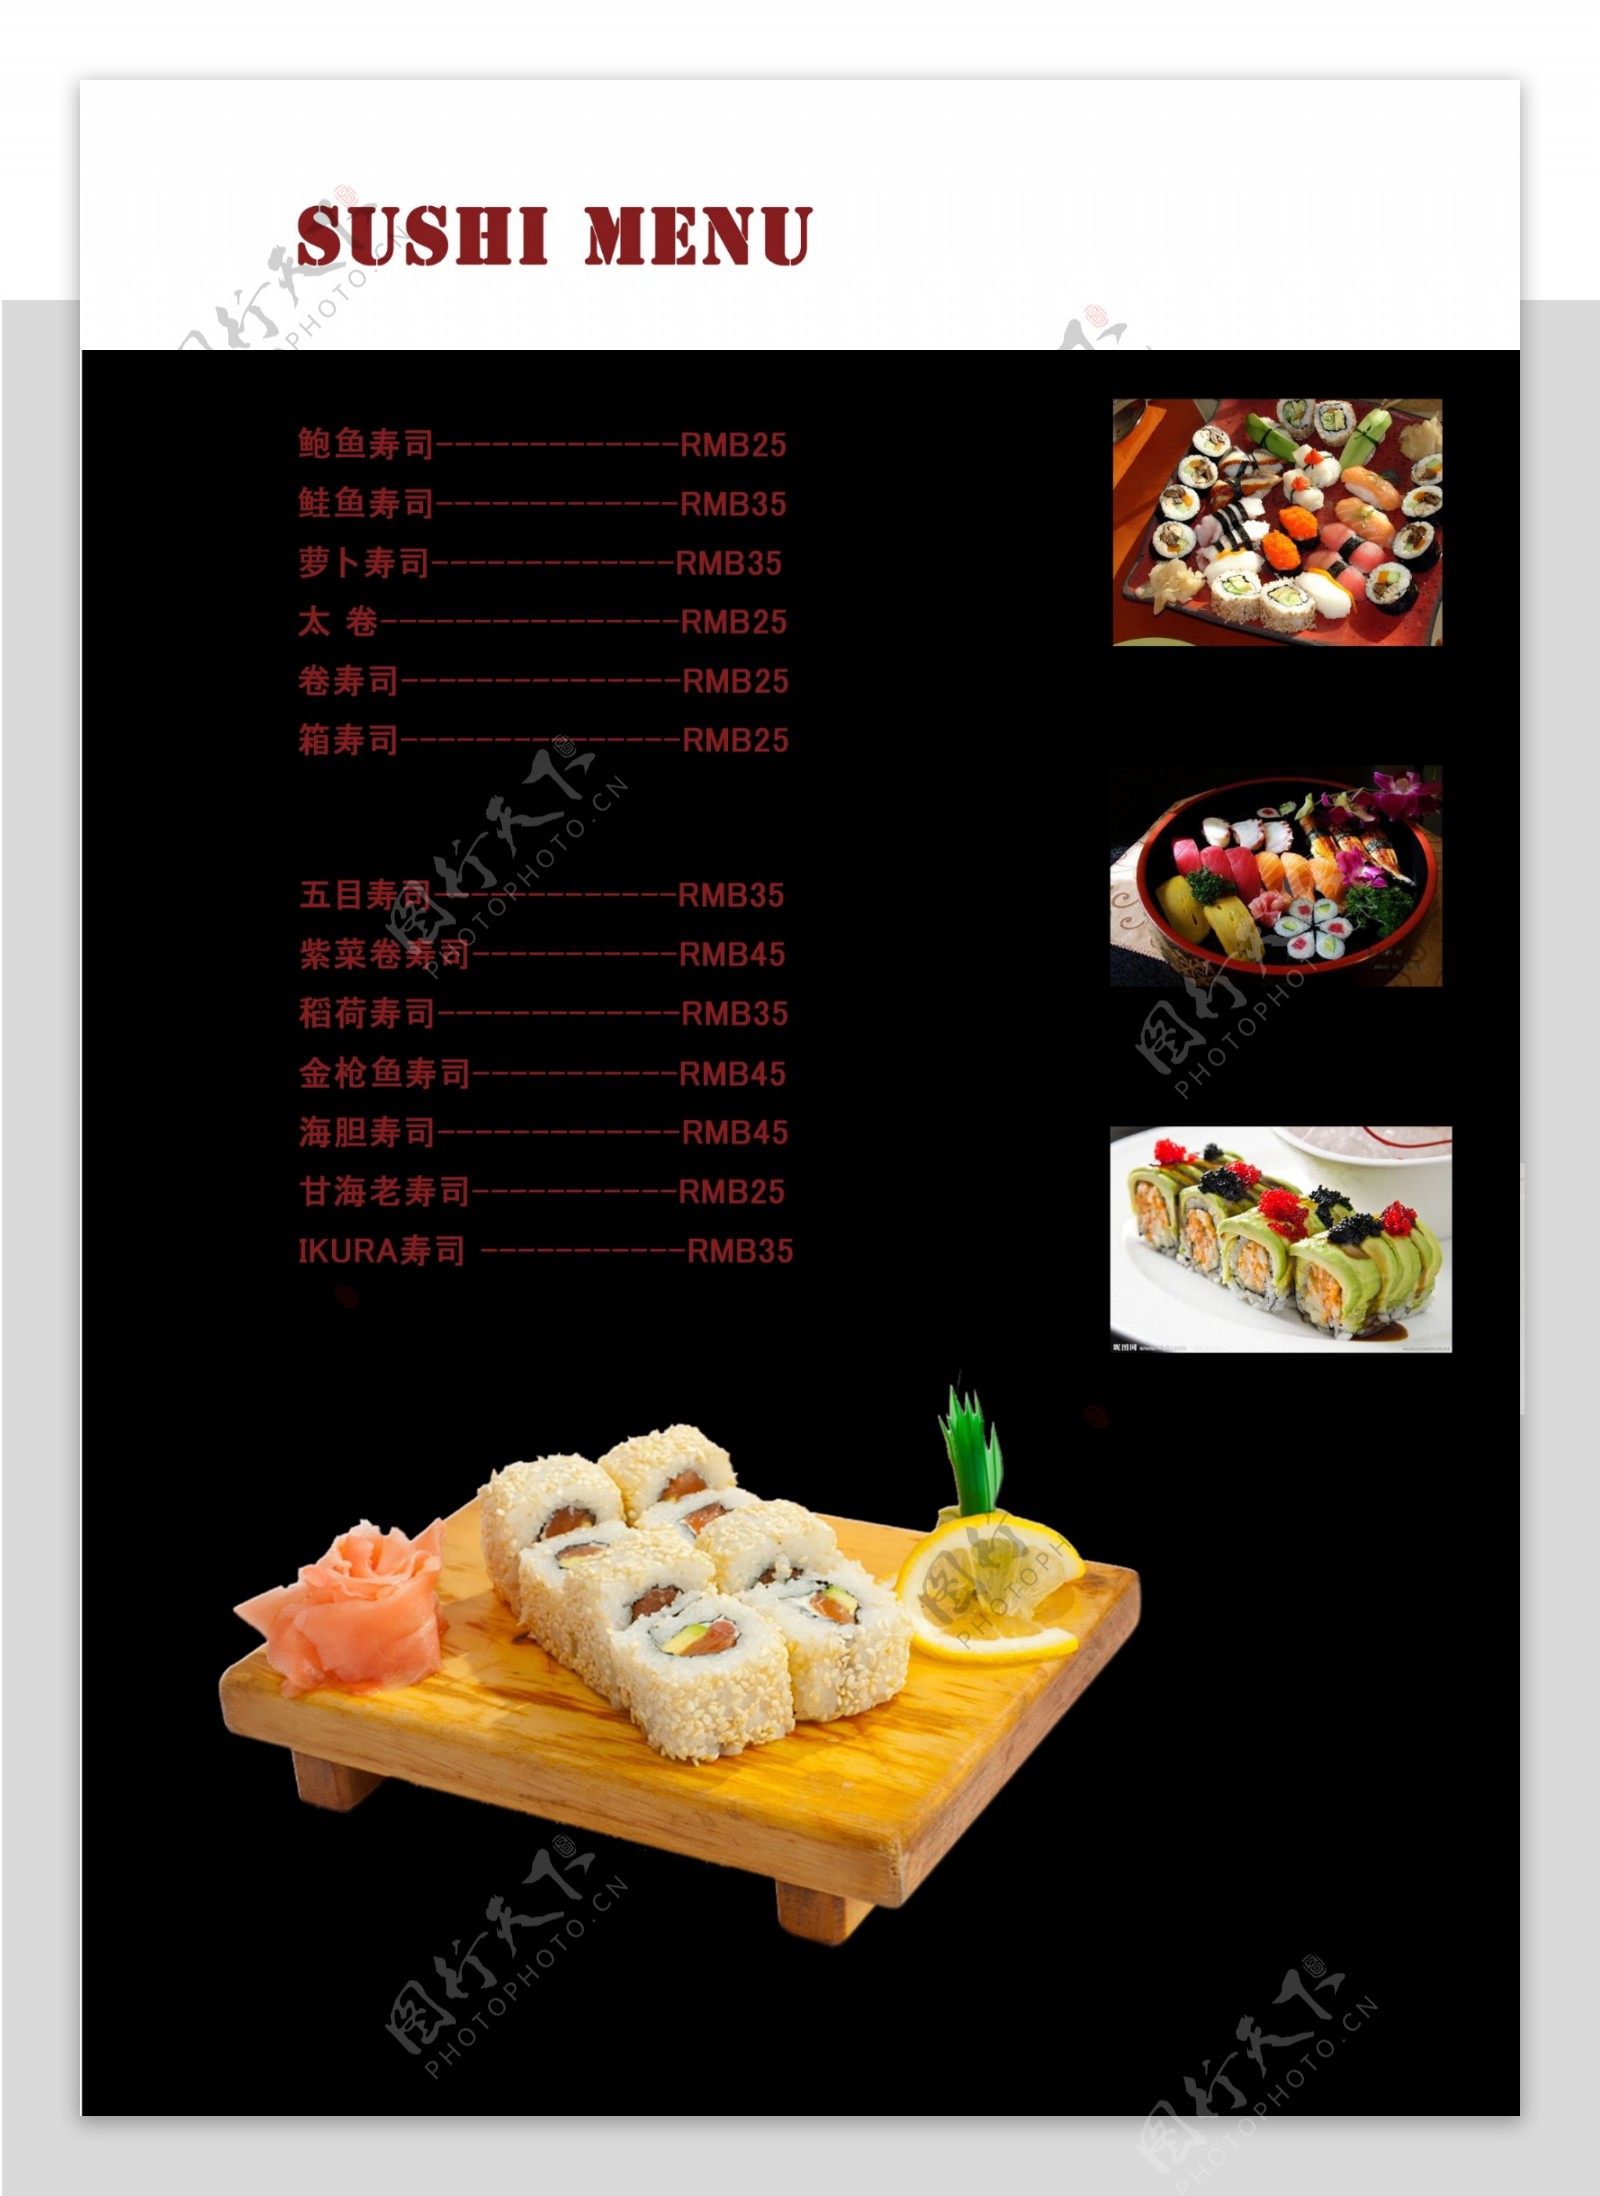 日式寿司菜单设计